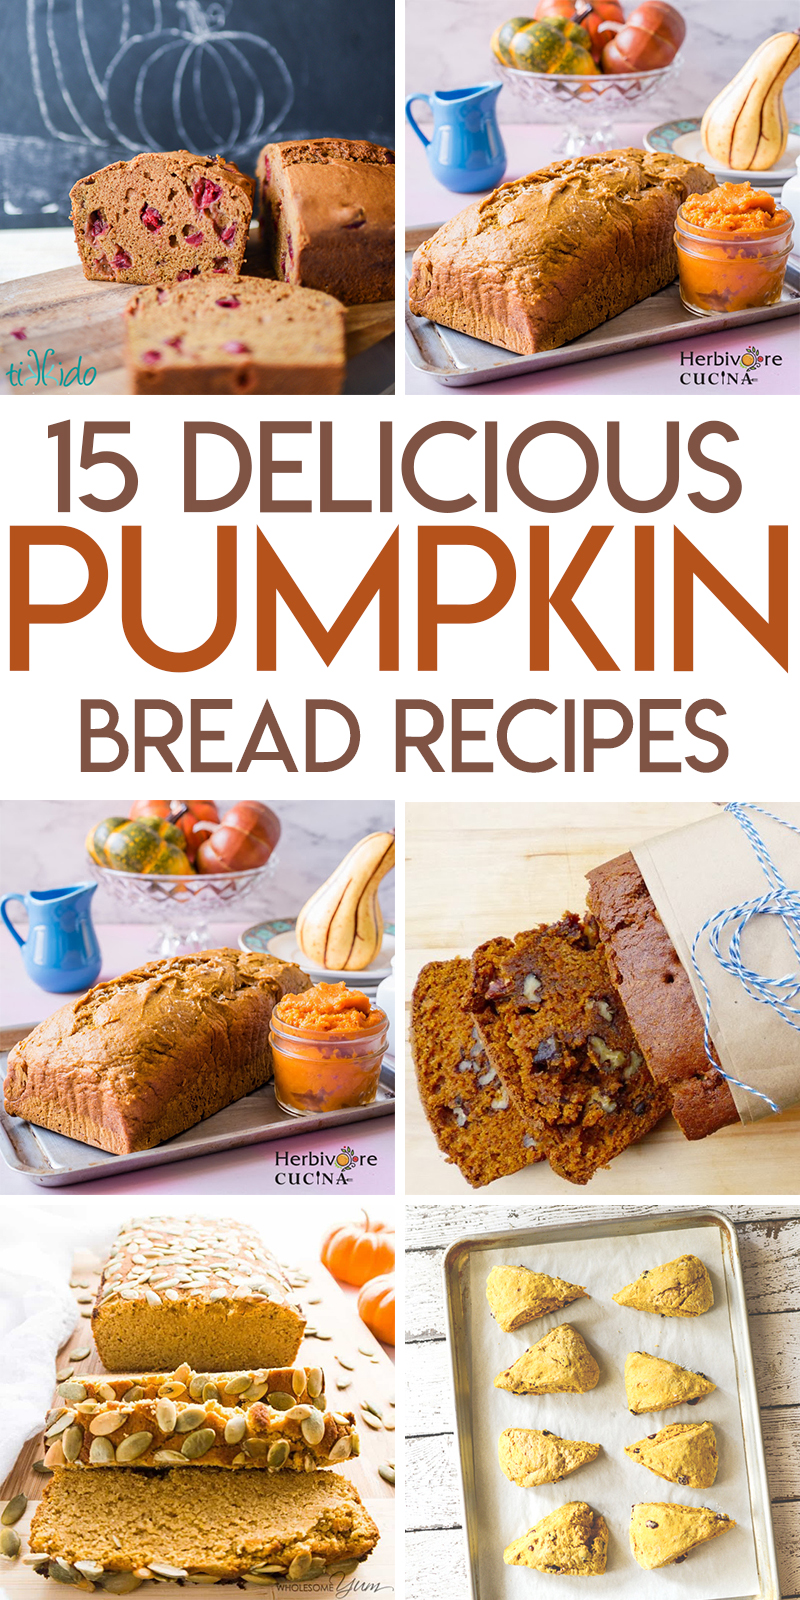 15 Perfect Pumpkin Bread Recipes | Random Acts of Baking